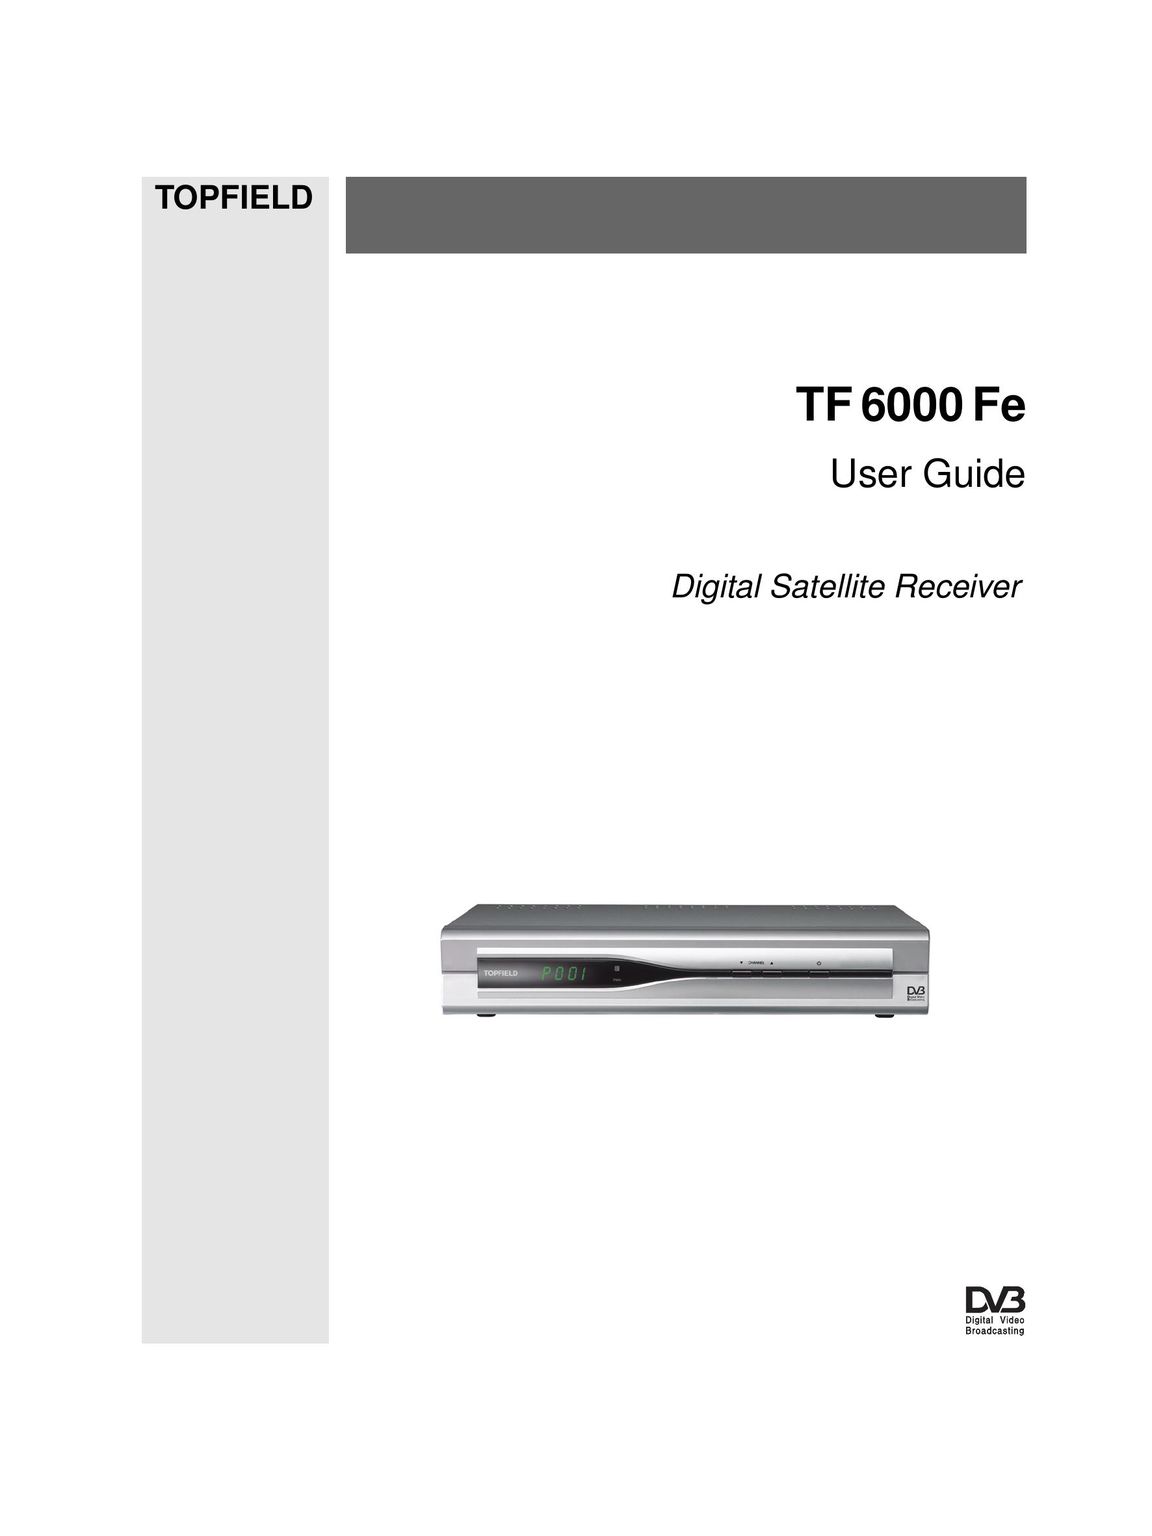 Topfield TF 6000 FE Satellite TV System User Manual